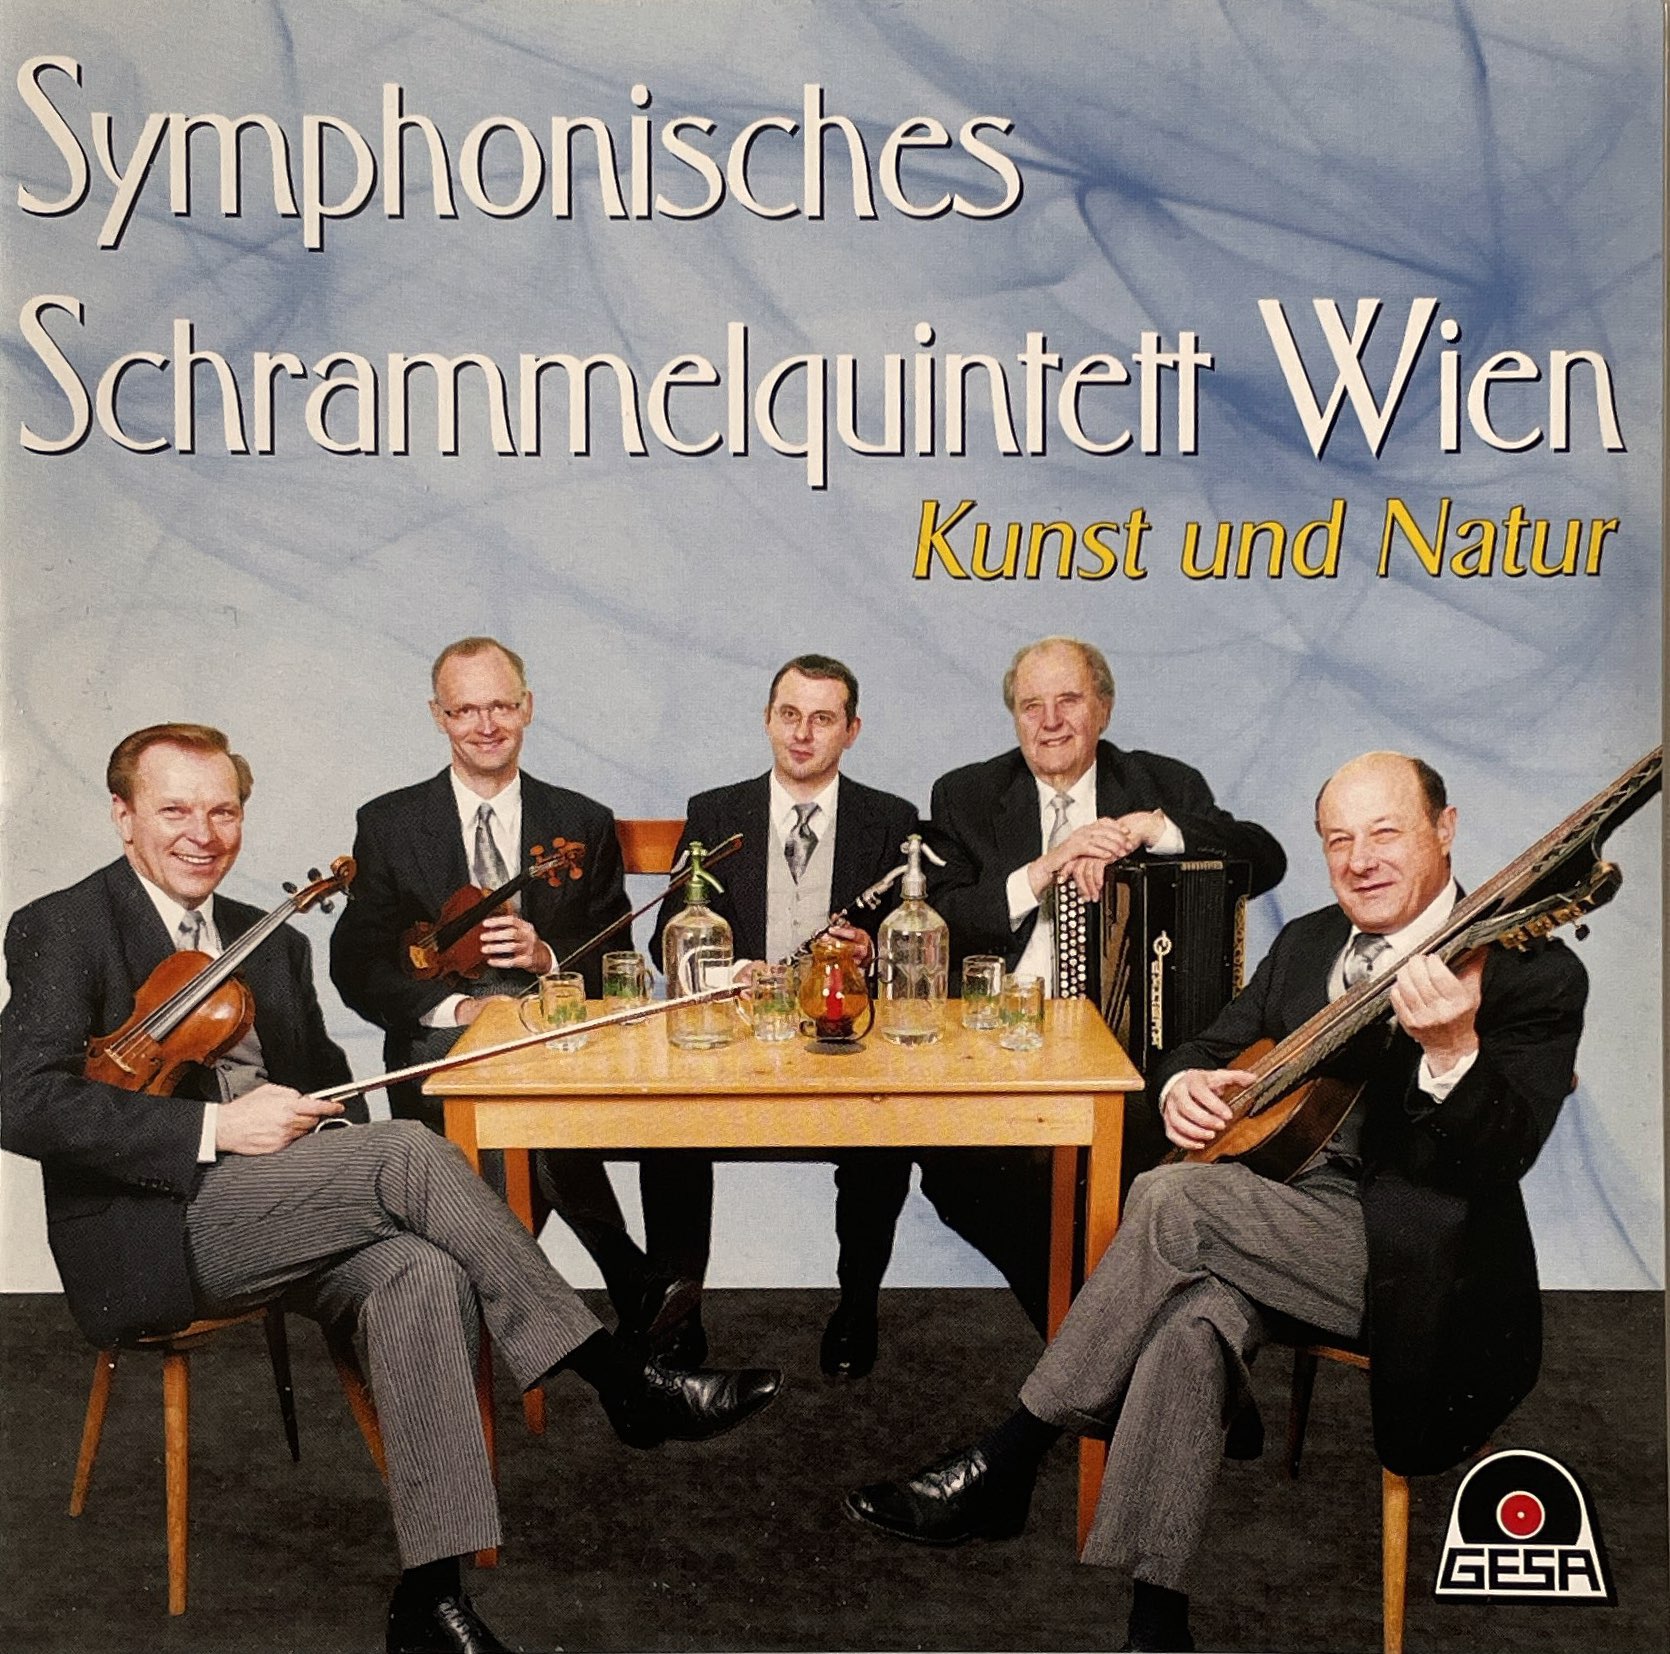 Symphonisches Schrammelquintet Wien – Das is halt weanarisch